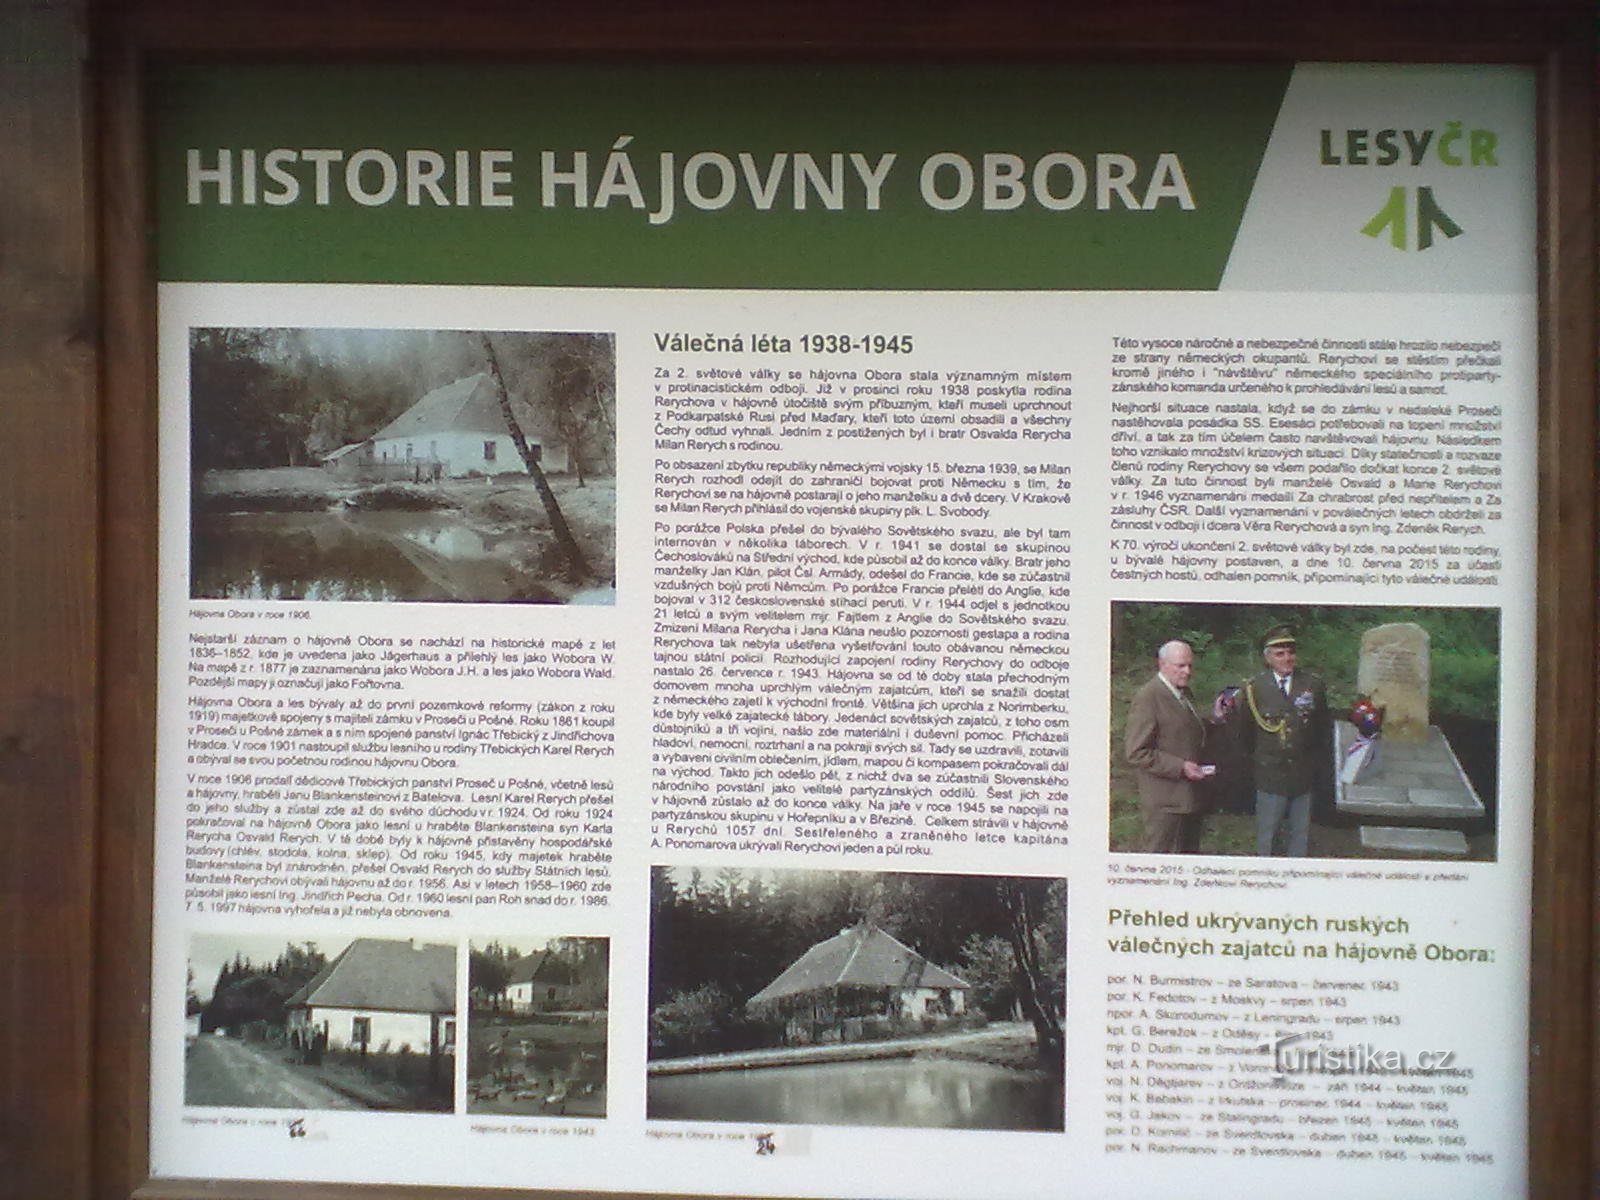 0. Το πρώην κρησφύγετο Rerychov - κατά τη διάρκεια του πολέμου, η οικογένεια έκρυβε αιχμαλώτους από στρατόπεδα συγκέντρωσης.